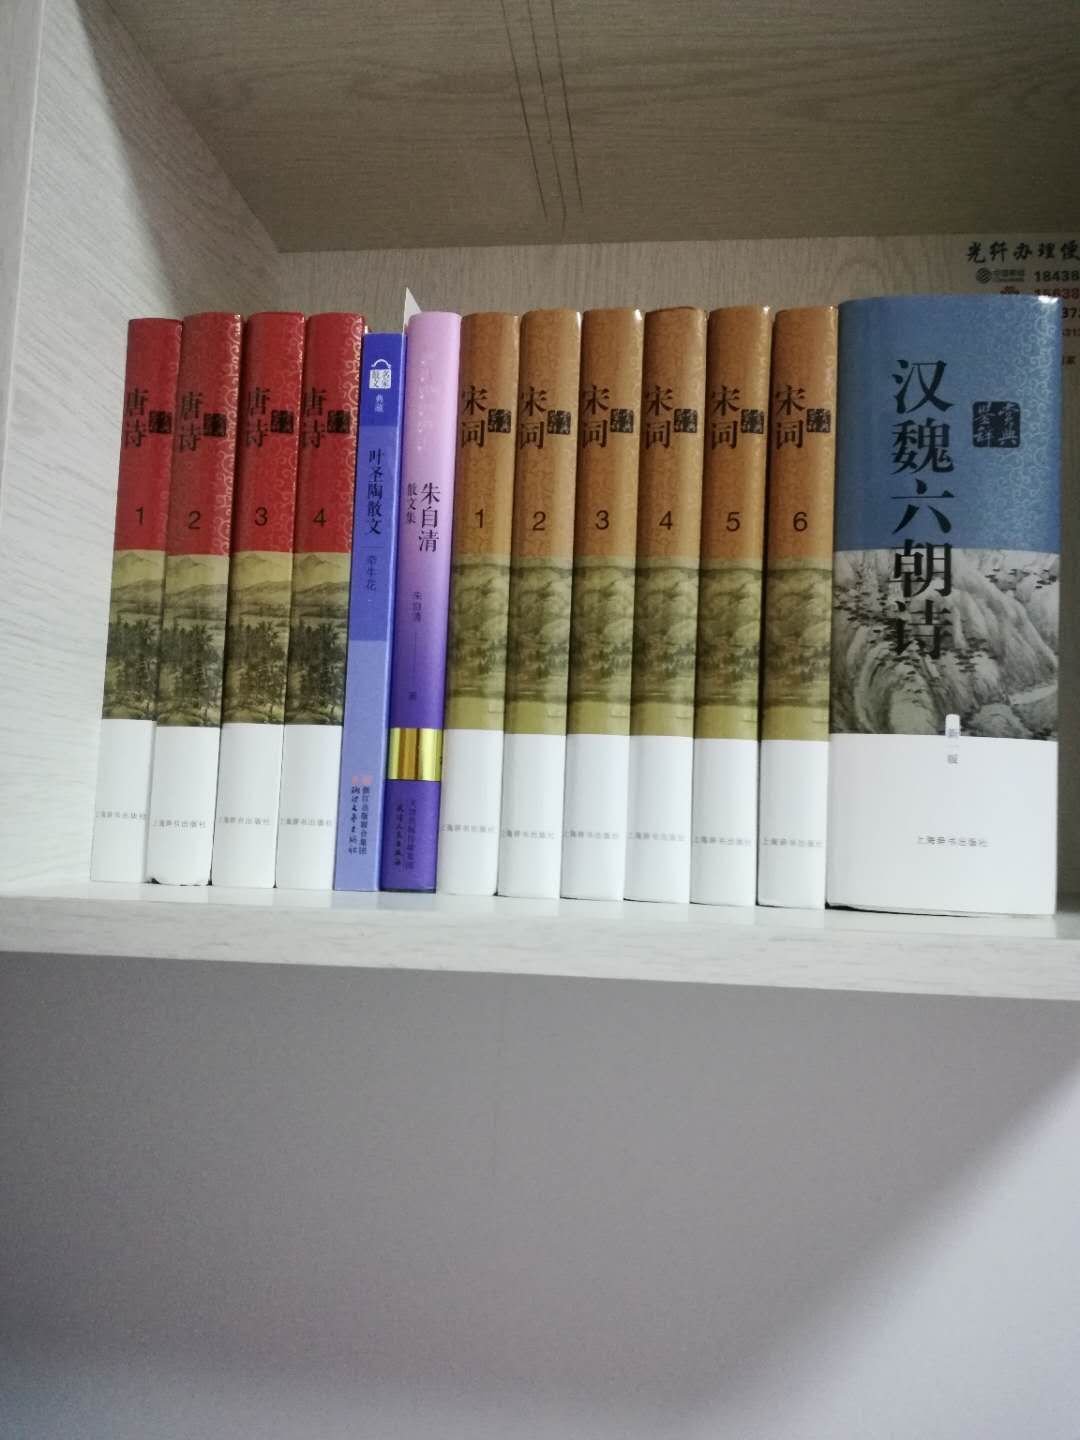 正版好书。上海辞书出版社????